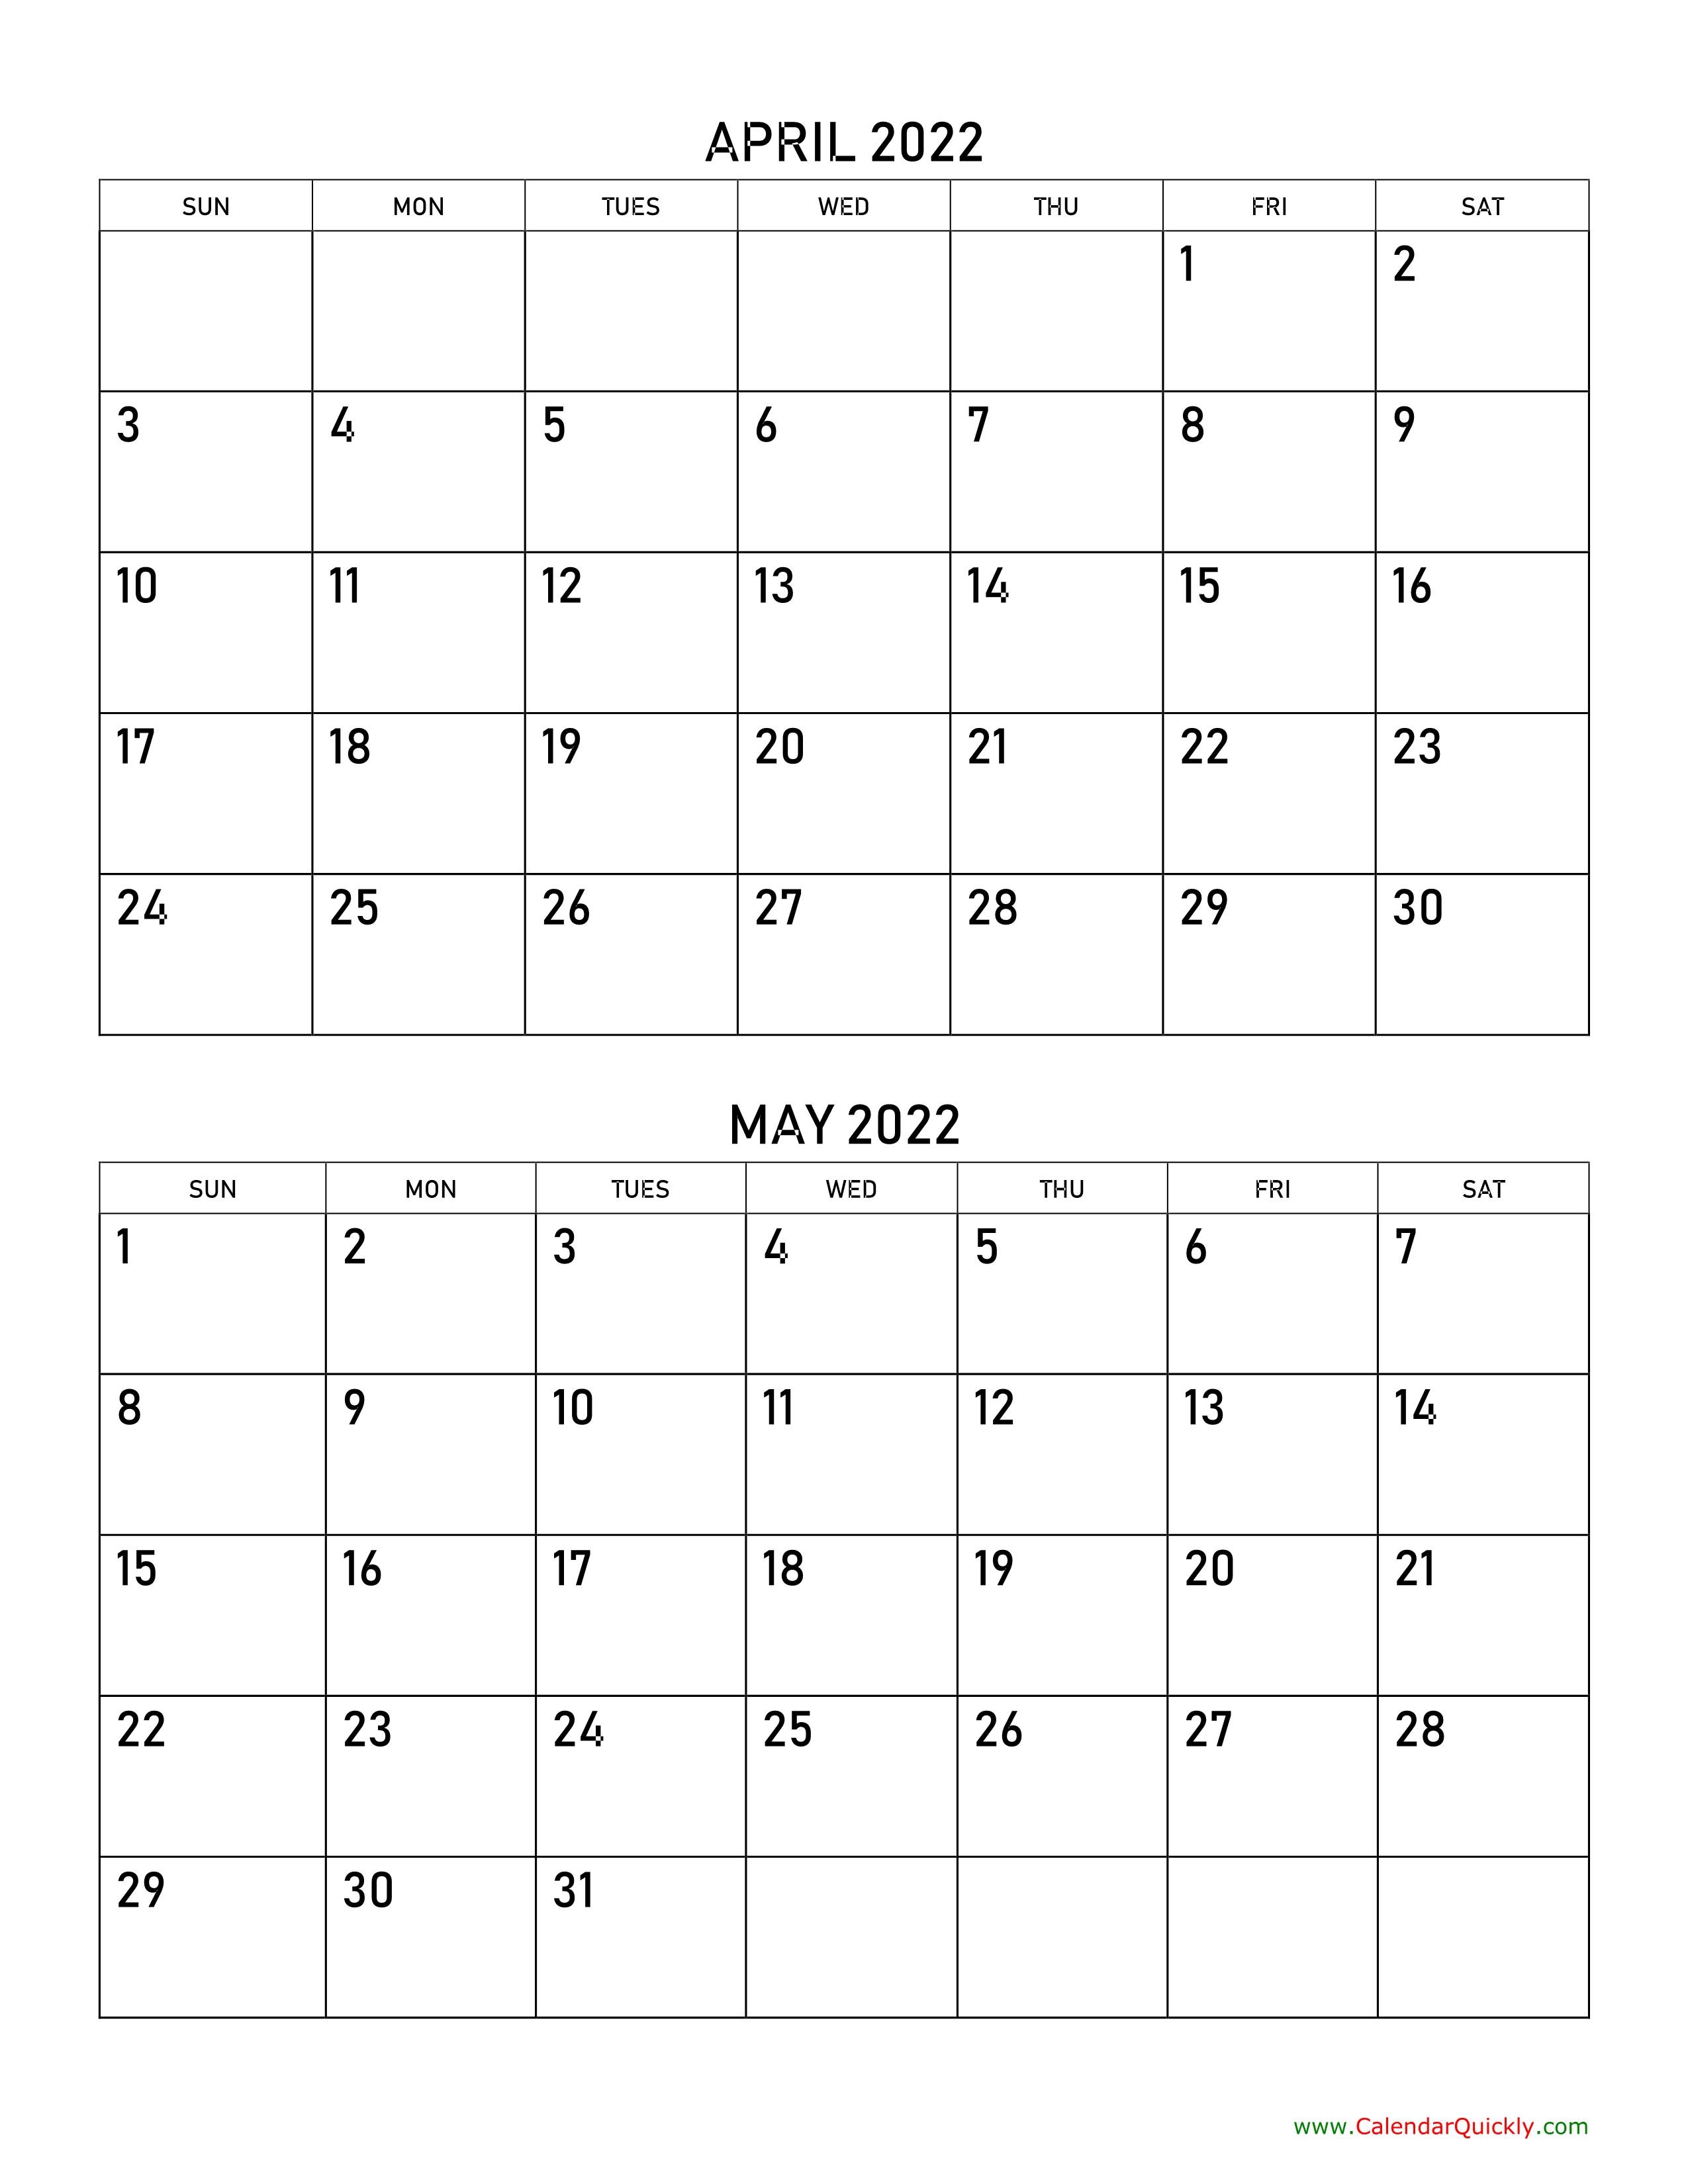 April and May 2022 Calendar Calendar Quickly